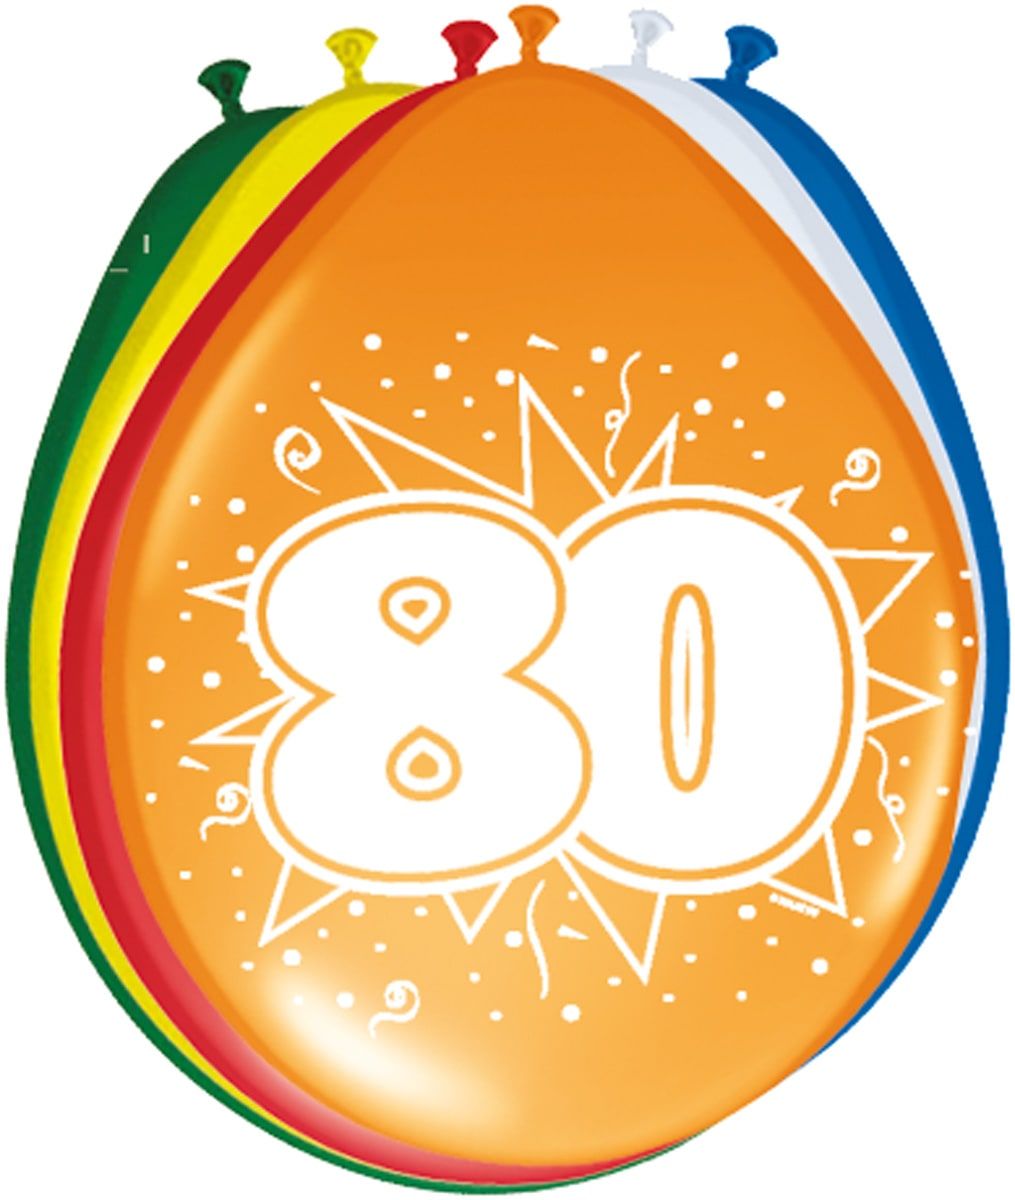 Verjaardag 80 jaar ballonnen 8 stuks